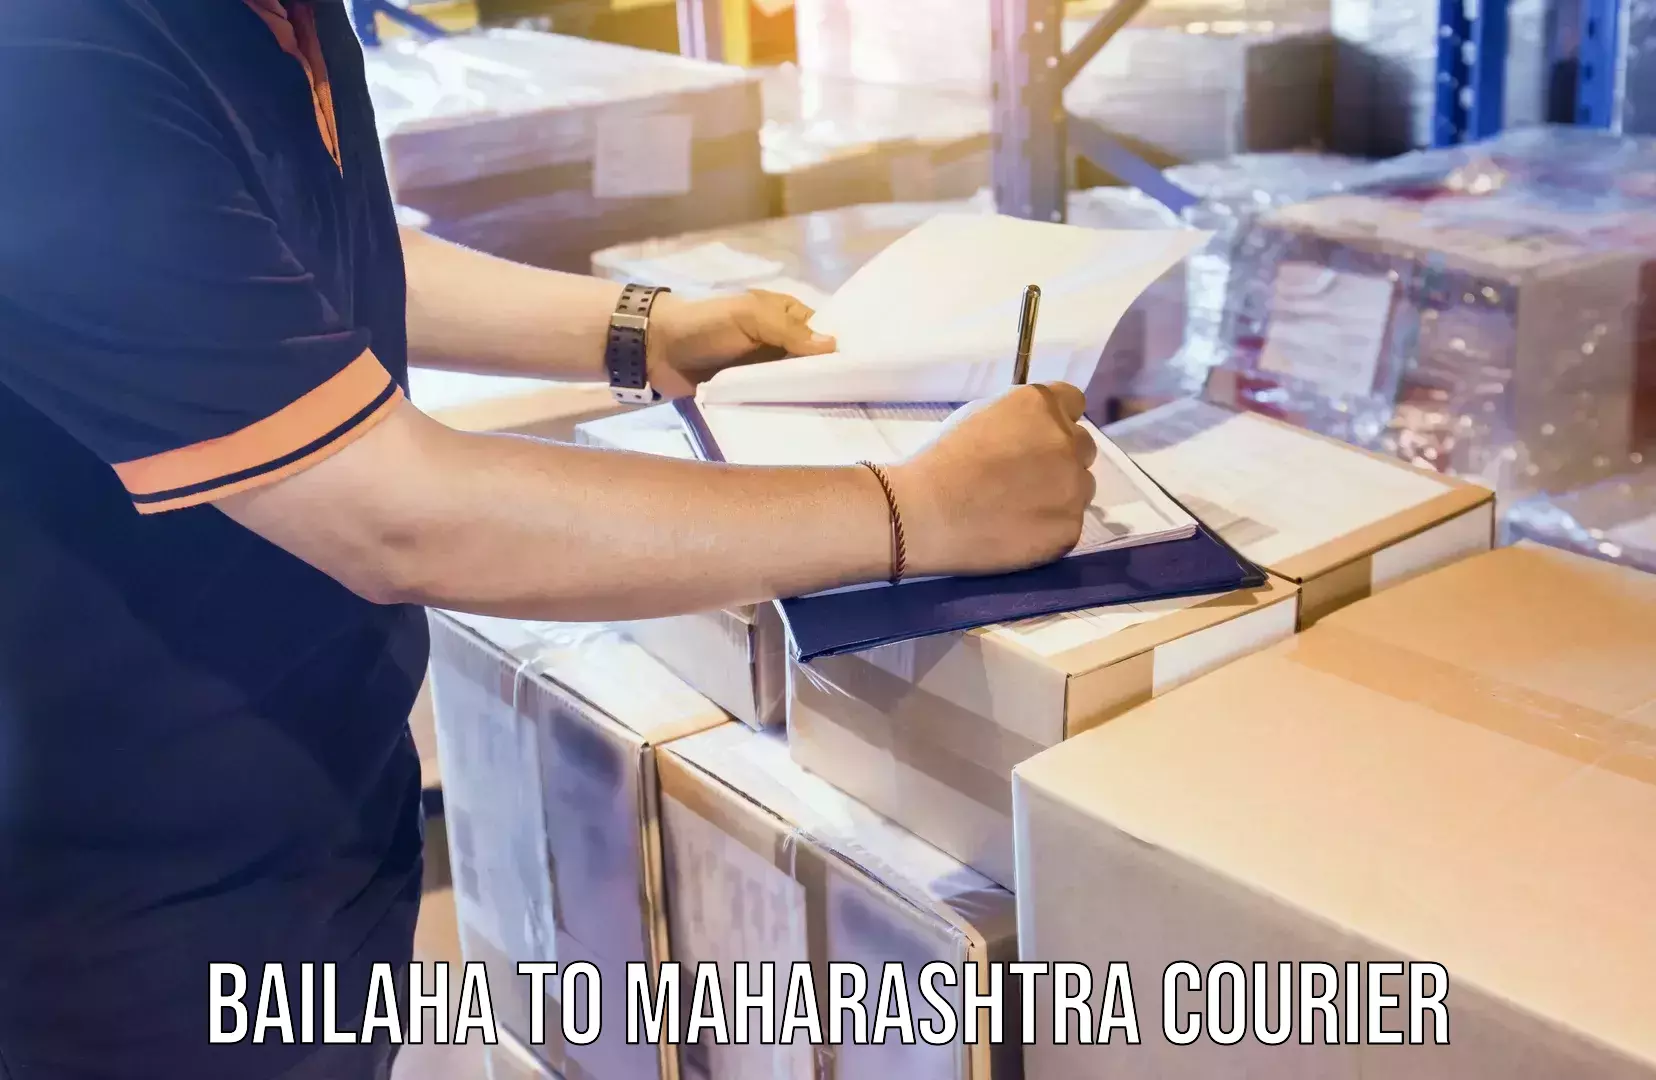 Courier service partnerships Bailaha to Maharashtra